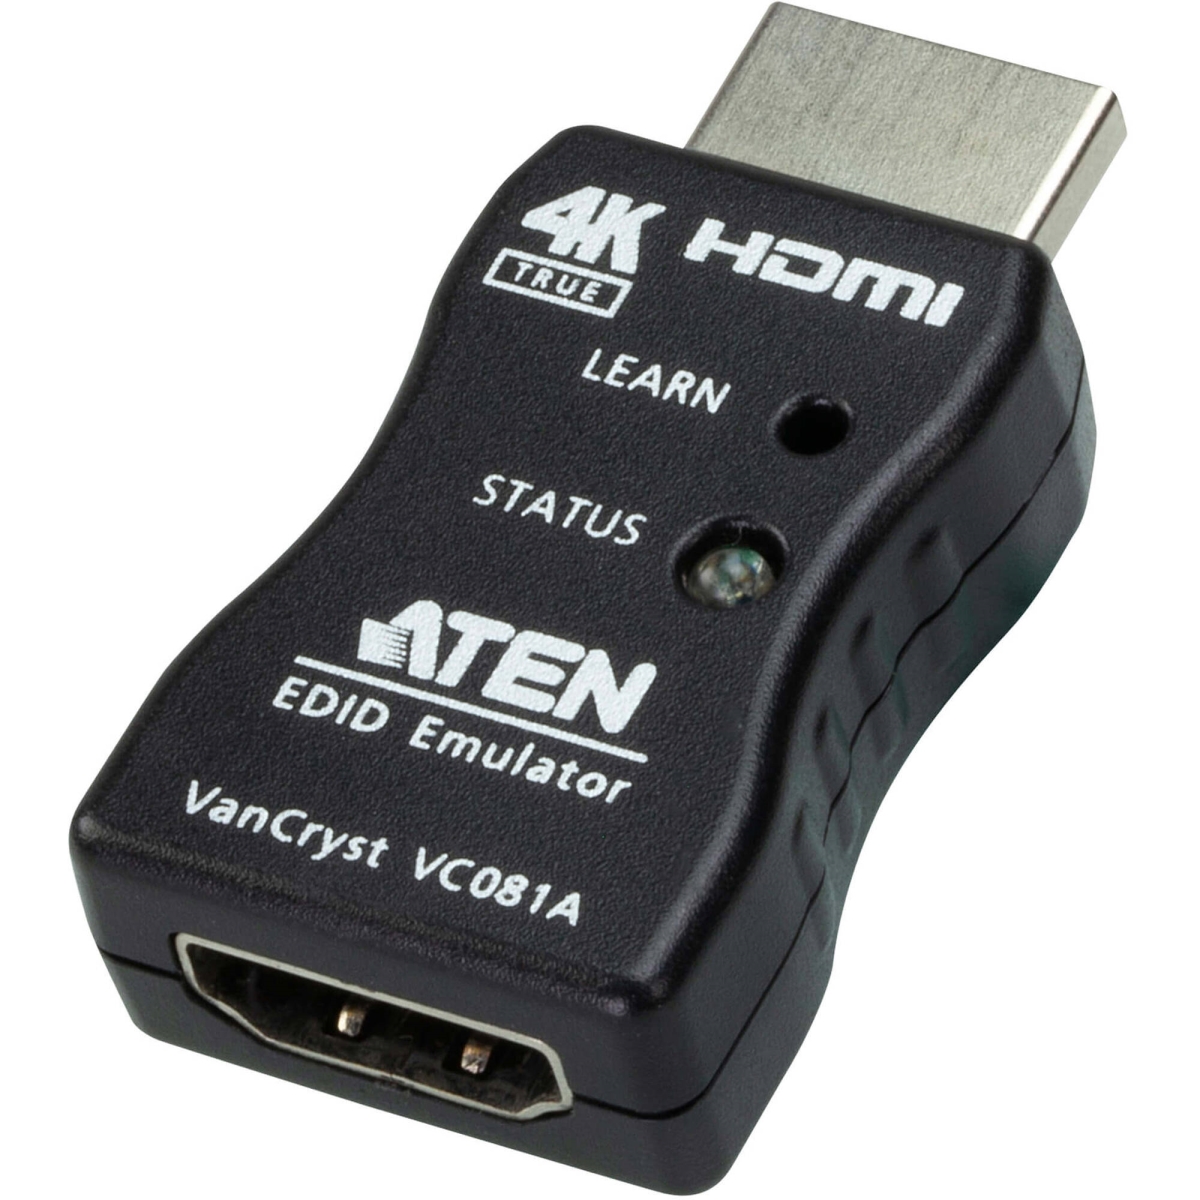 Picture of Aten VC081A True 4K HDMI EDID Emulator Adapter